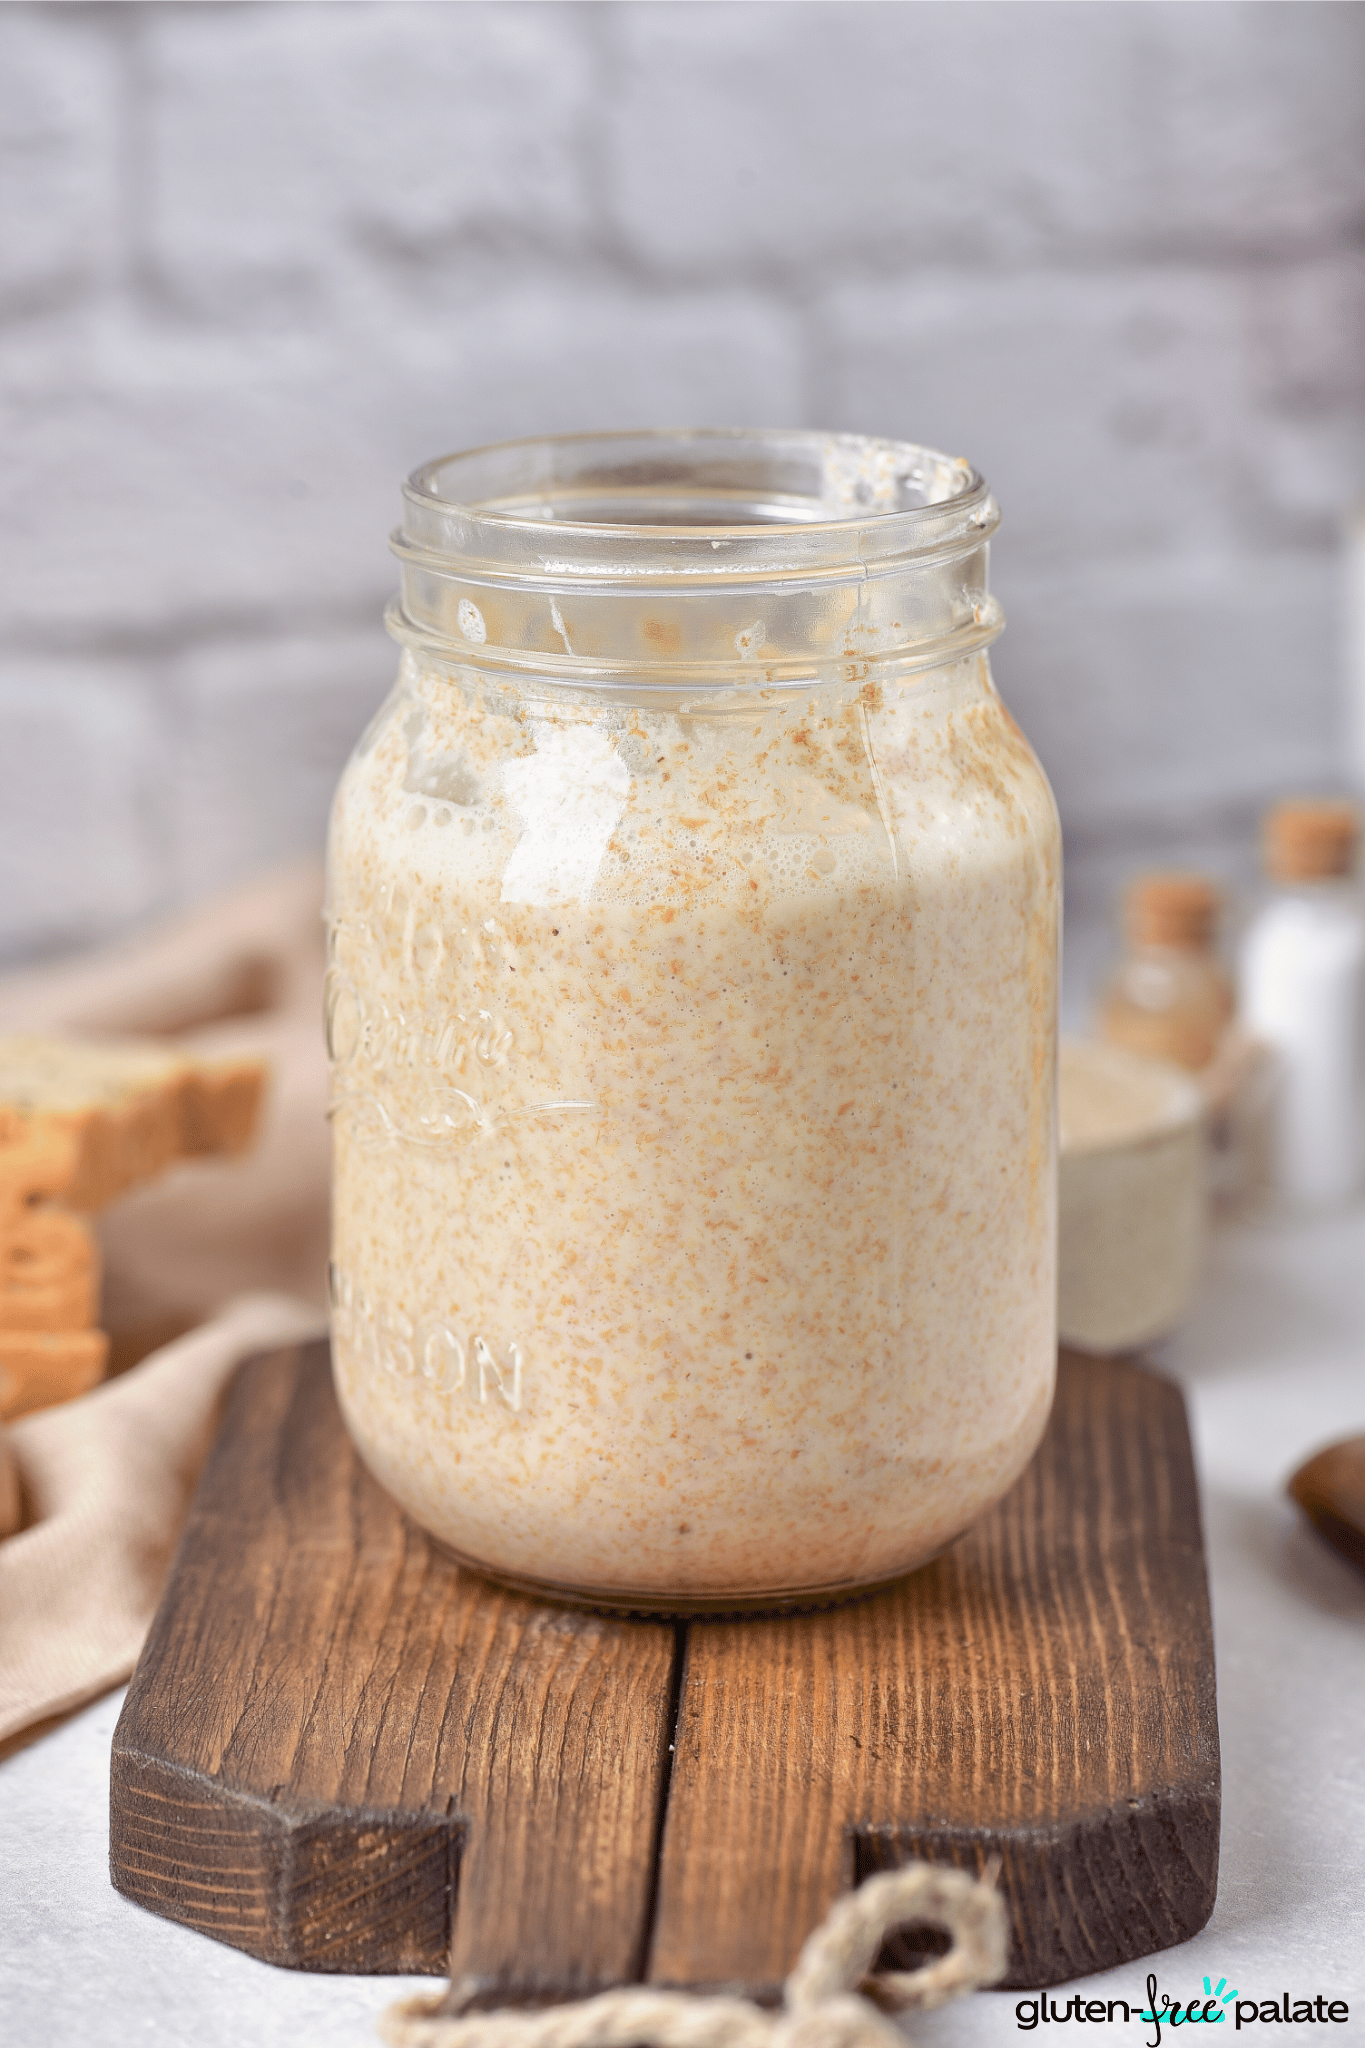 gluten-free sourdough starter in a glass jar on a board.